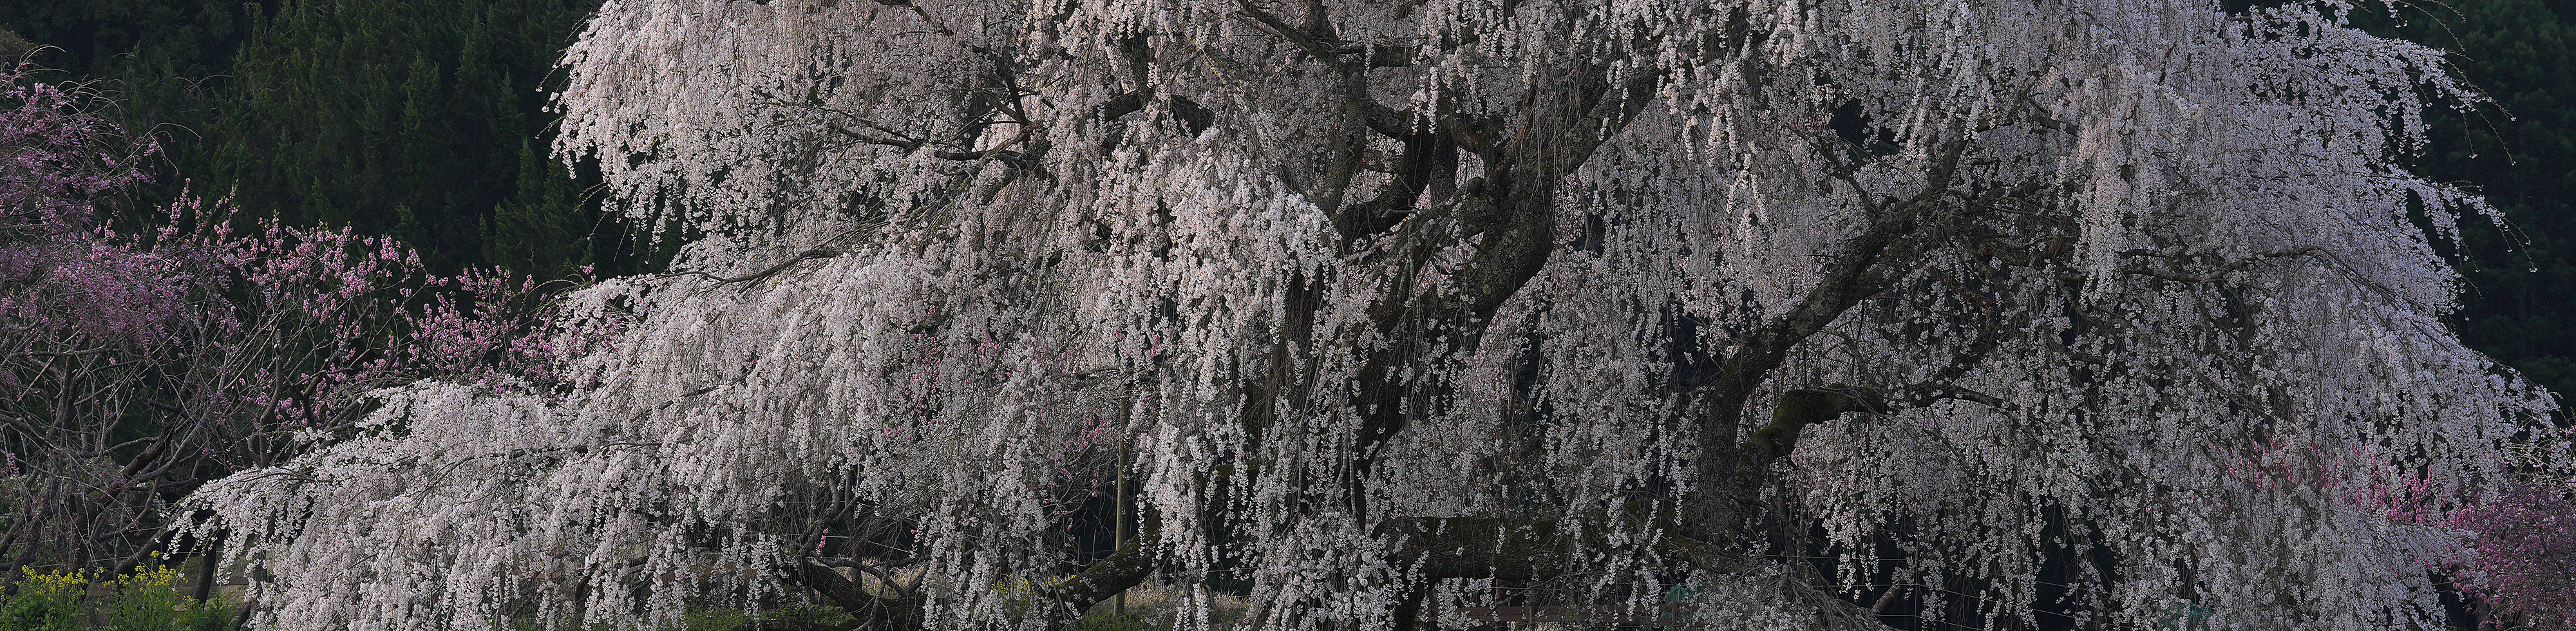 활짝 핀 벚꽃 이미지